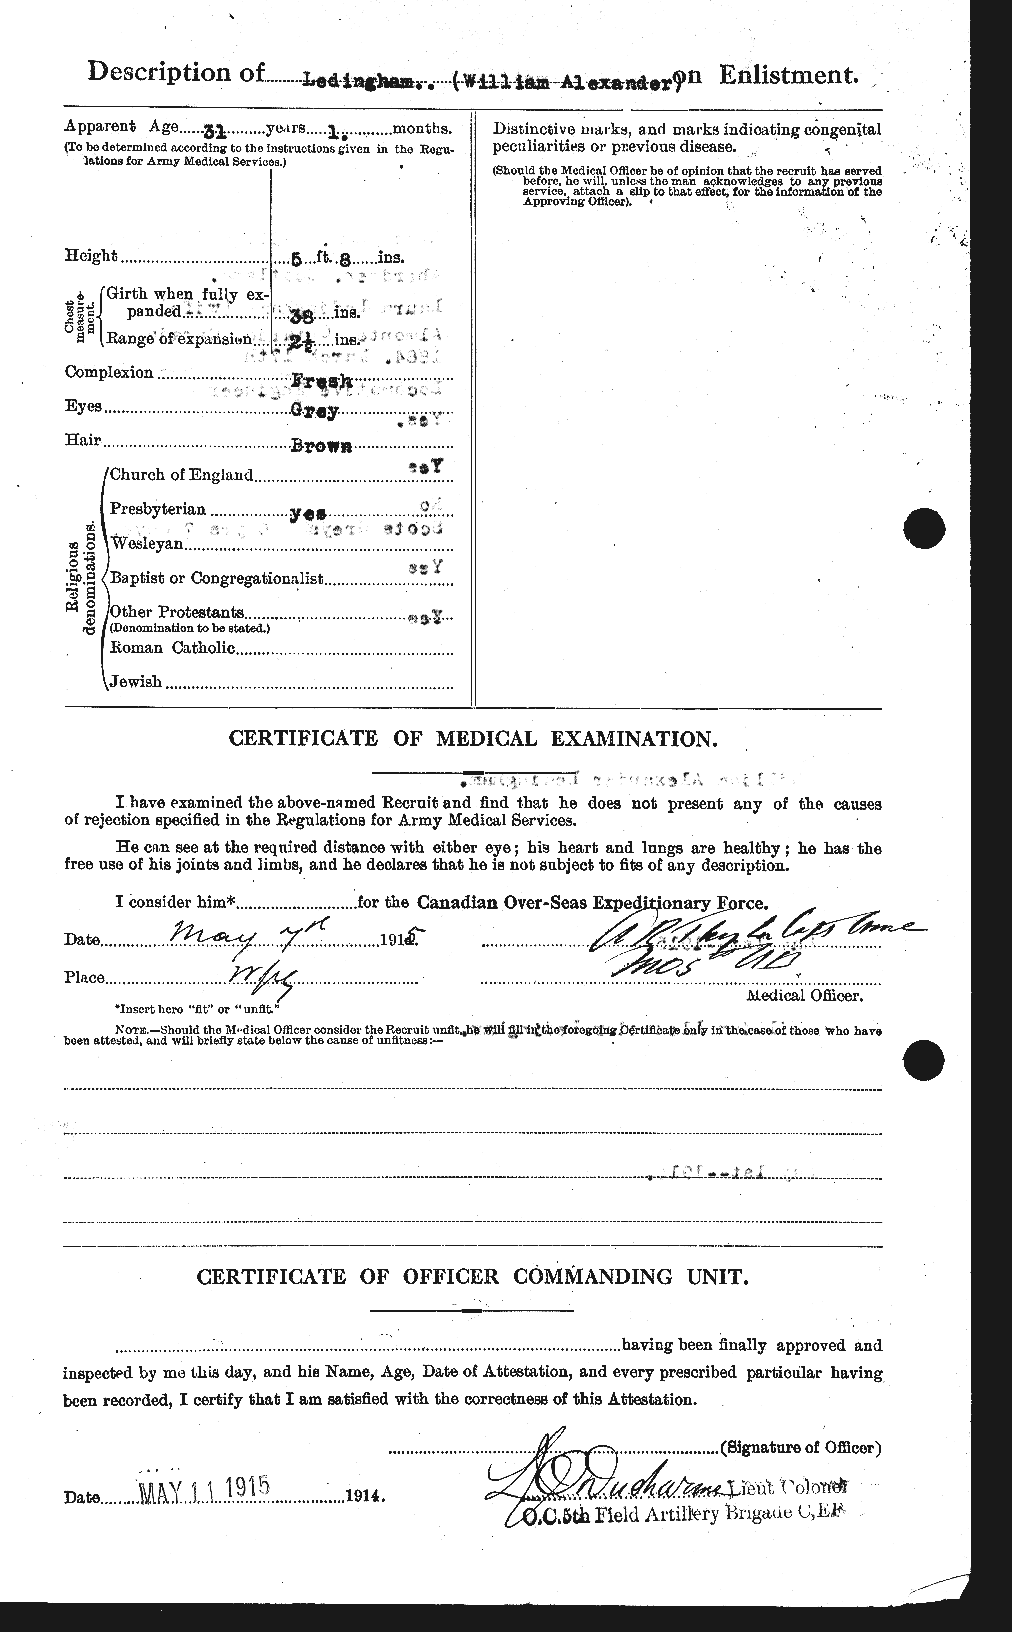 Dossiers du Personnel de la Première Guerre mondiale - CEC 456401b